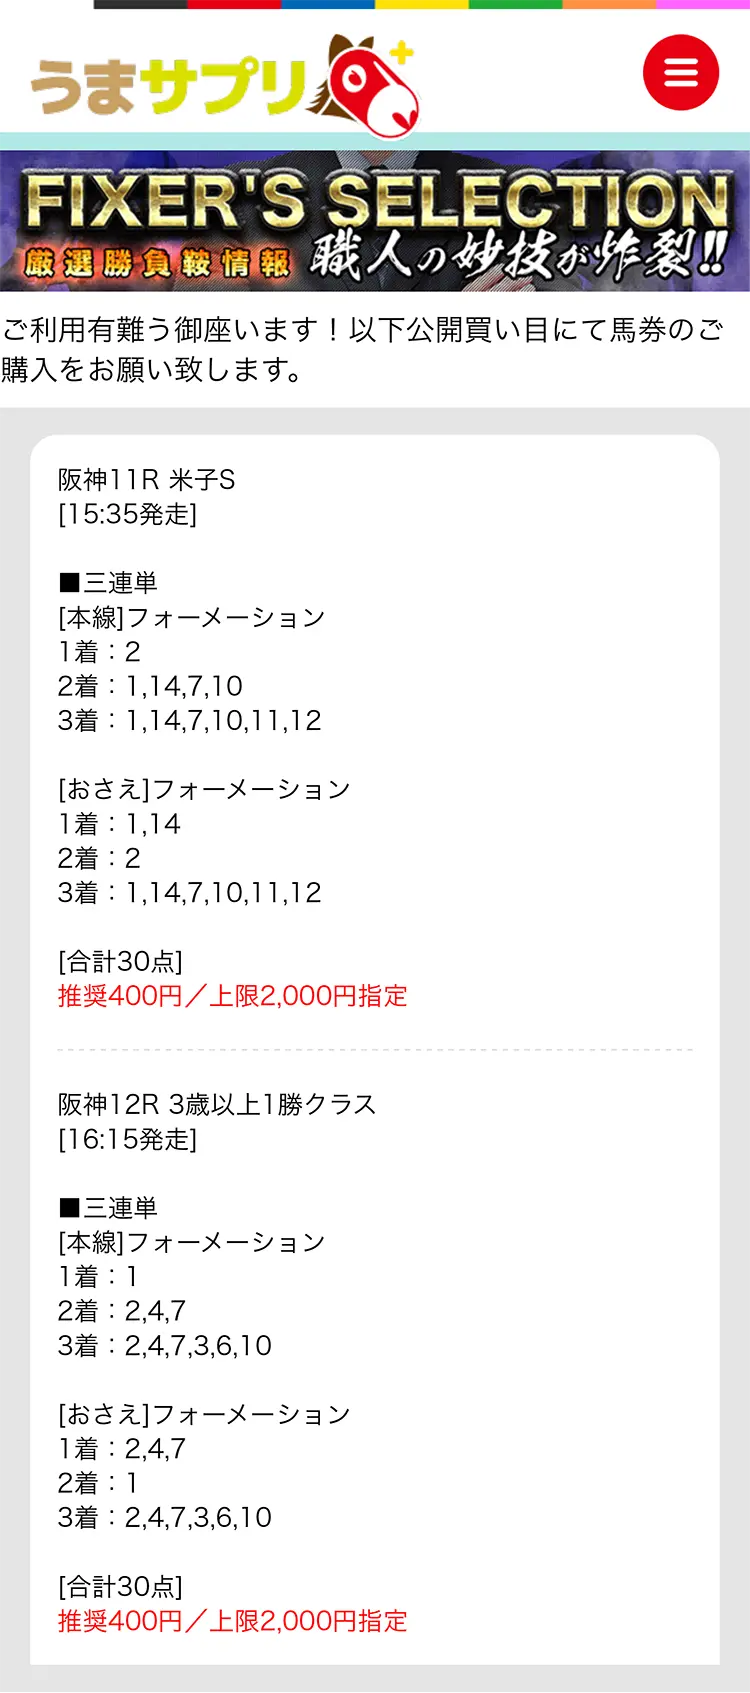 うまサプリ6月18日(土)『FIXER'S SELECTION阪神』買い目